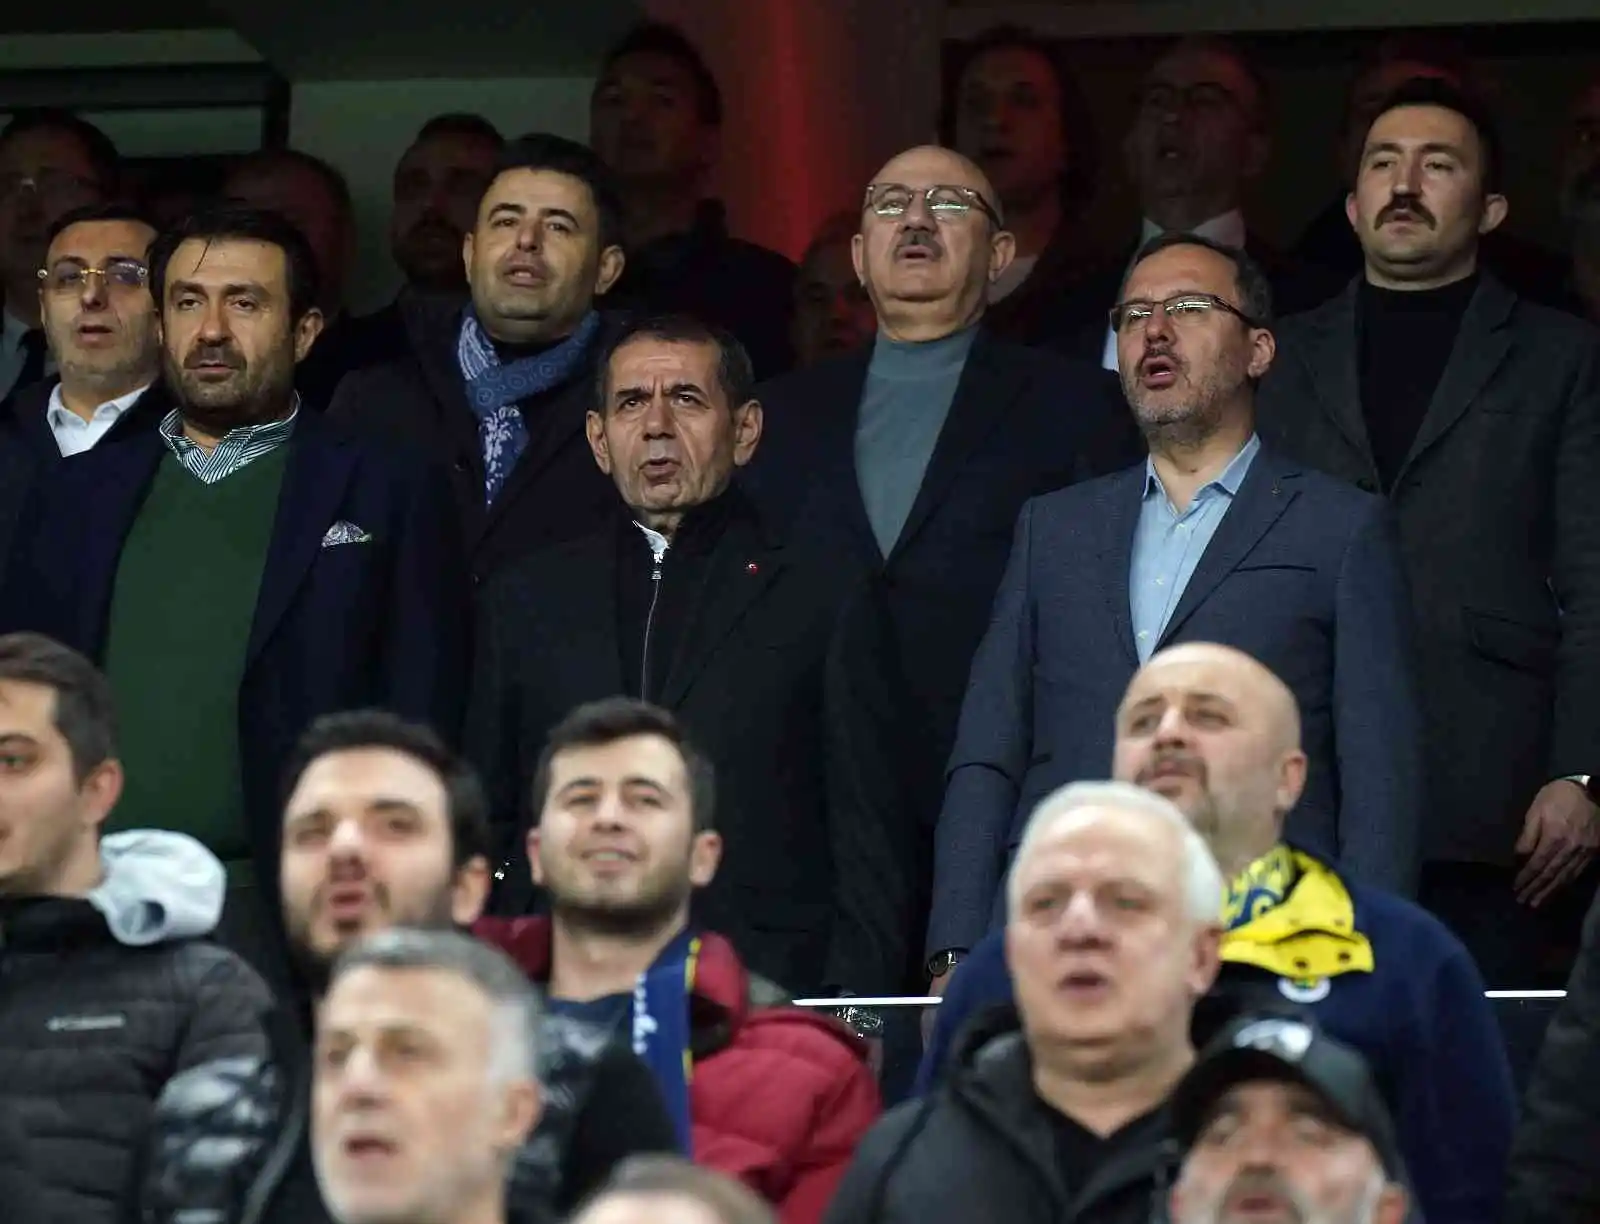 Spor Toto Süper Lig: Fenerbahçe: 0 - Galatasaray: 0 (Maç devam ediyor)
